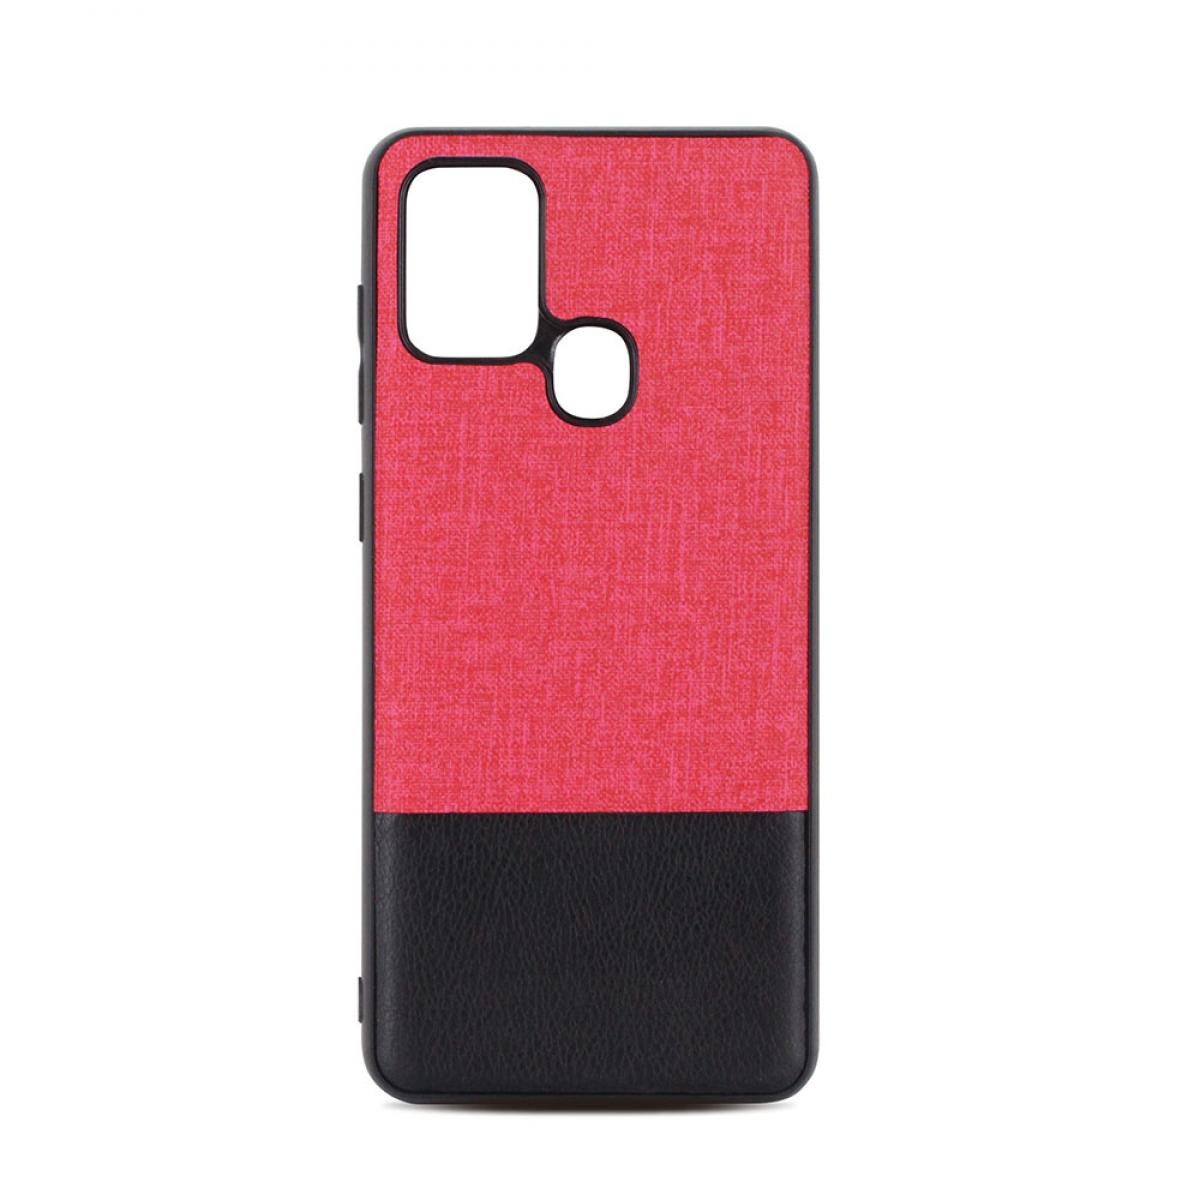 Mooov - Coque souple bi-matière pour Samsung A21s - rouge et noire - Autres accessoires smartphone